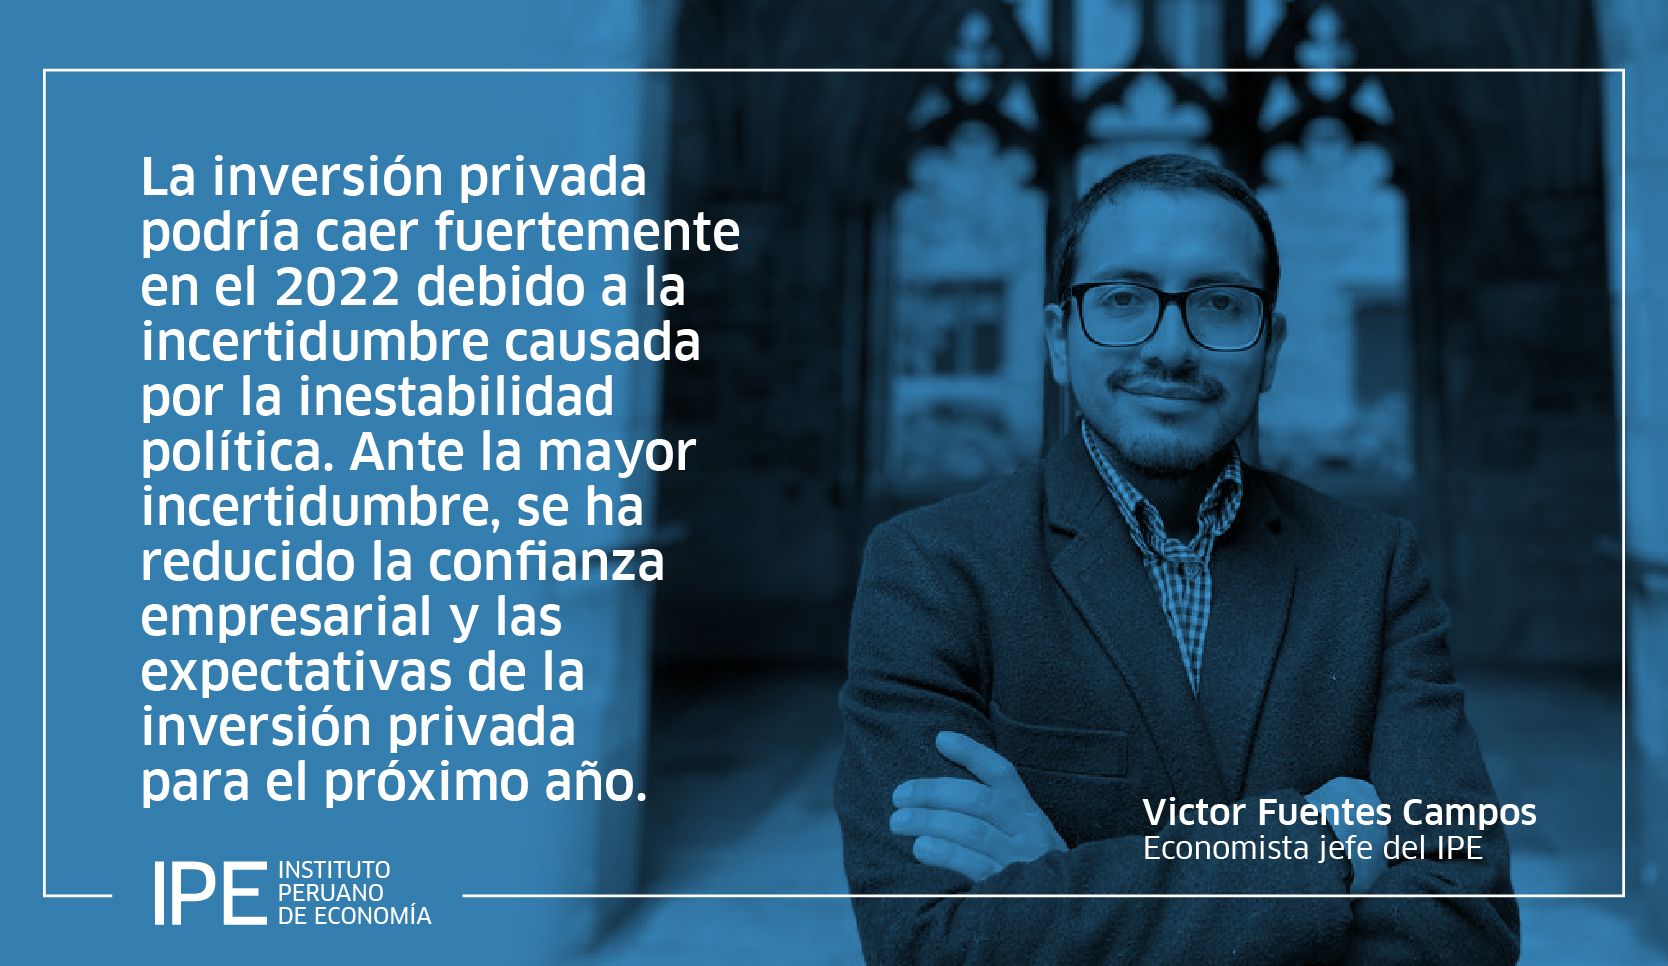 Inversión privada, economía, Perú, Victor Fuentes